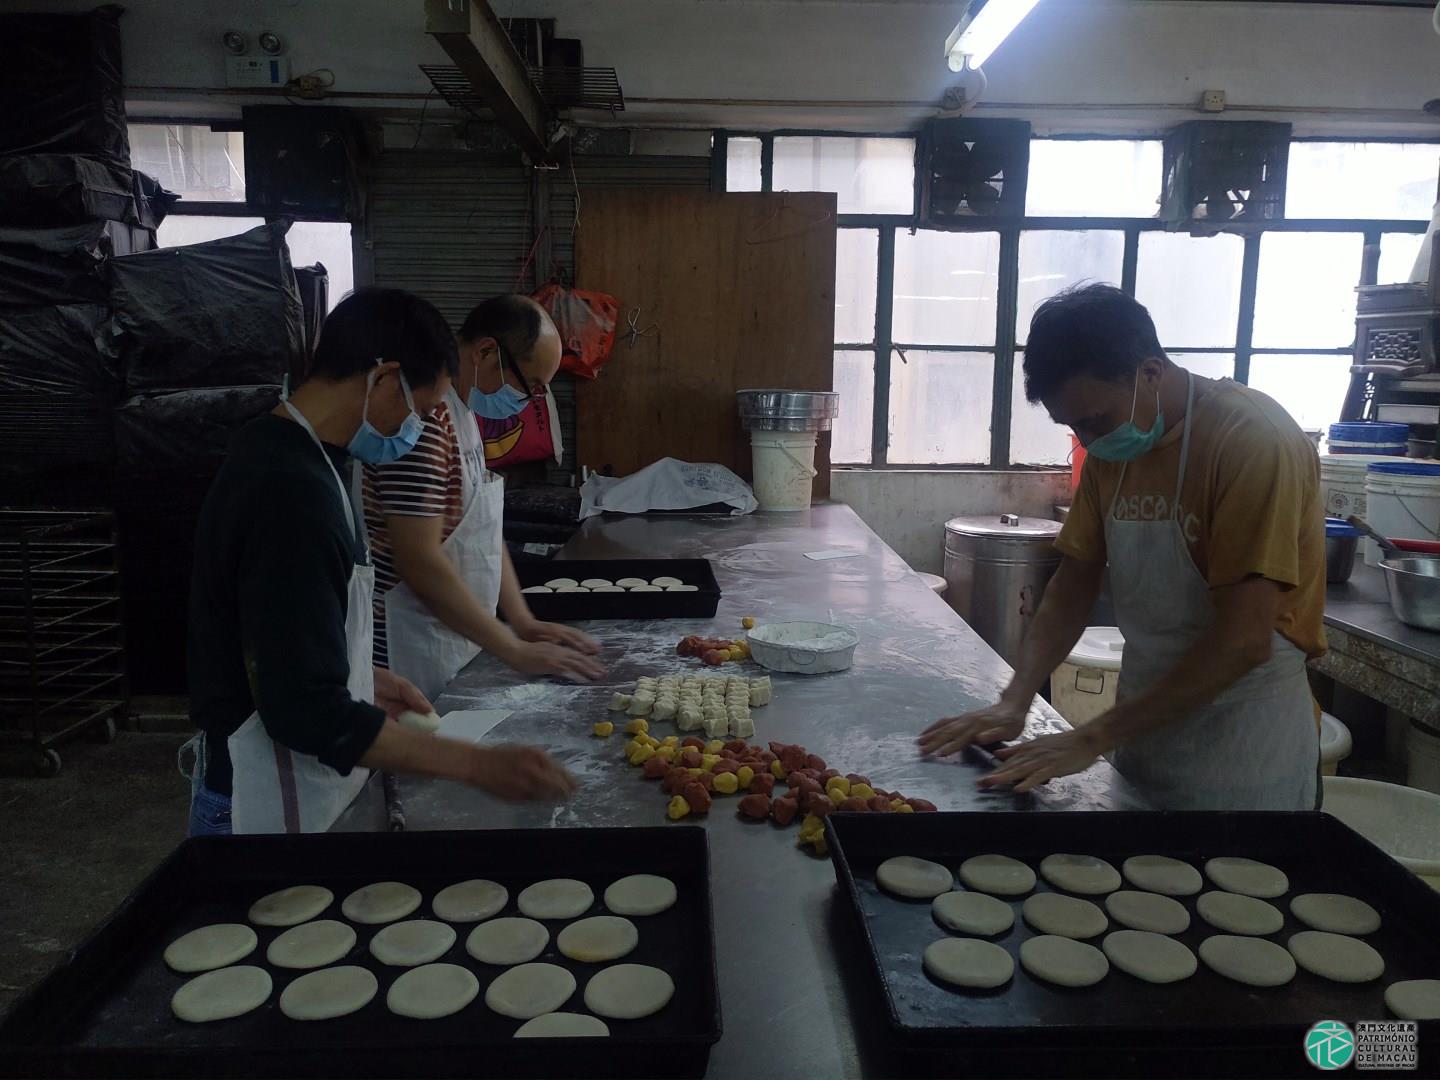 Pastelarias chinesas proibidas de vender bolos com a forma da